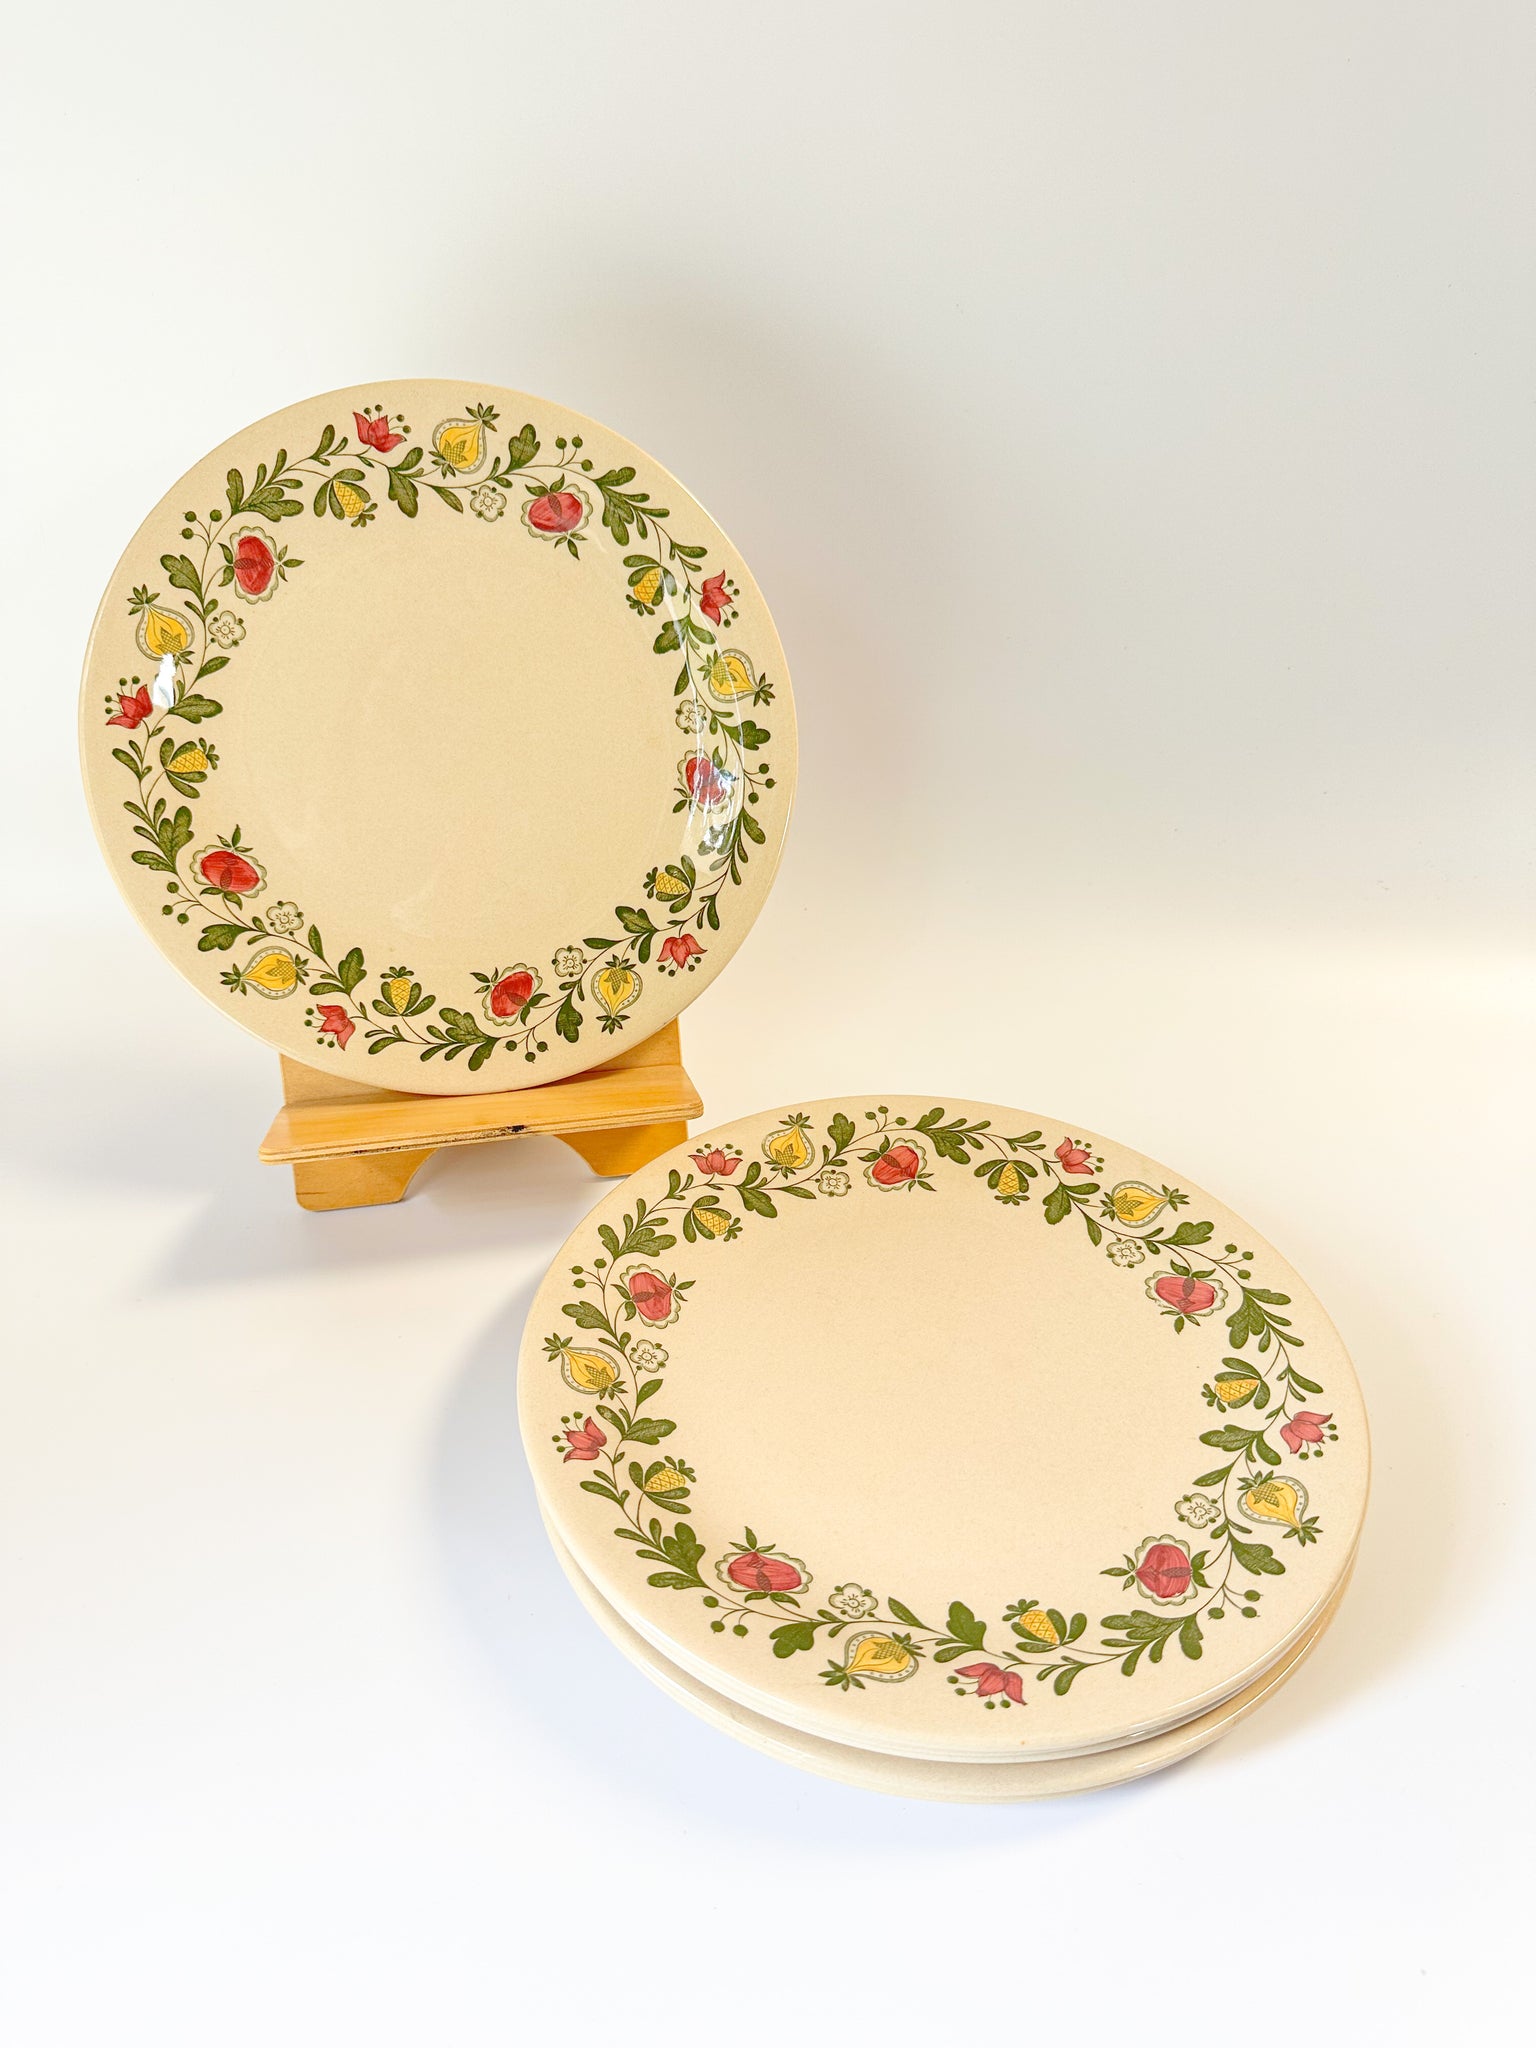 Vintage Dinner Plates